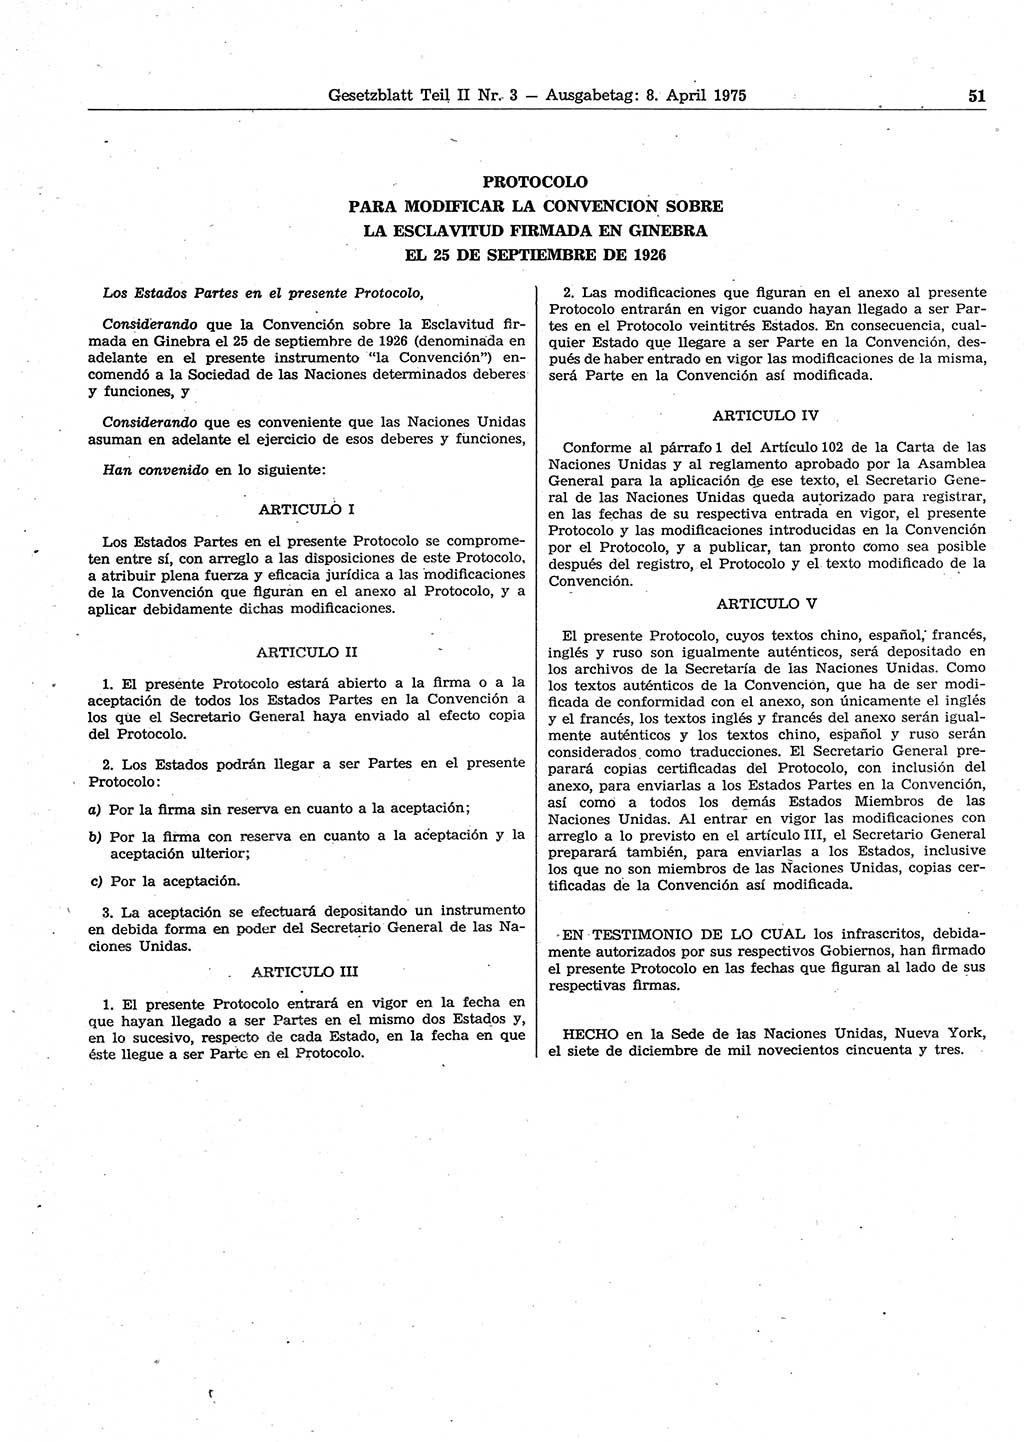 Gesetzblatt (GBl.) der Deutschen Demokratischen Republik (DDR) Teil ⅠⅠ 1975, Seite 51 (GBl. DDR ⅠⅠ 1975, S. 51)